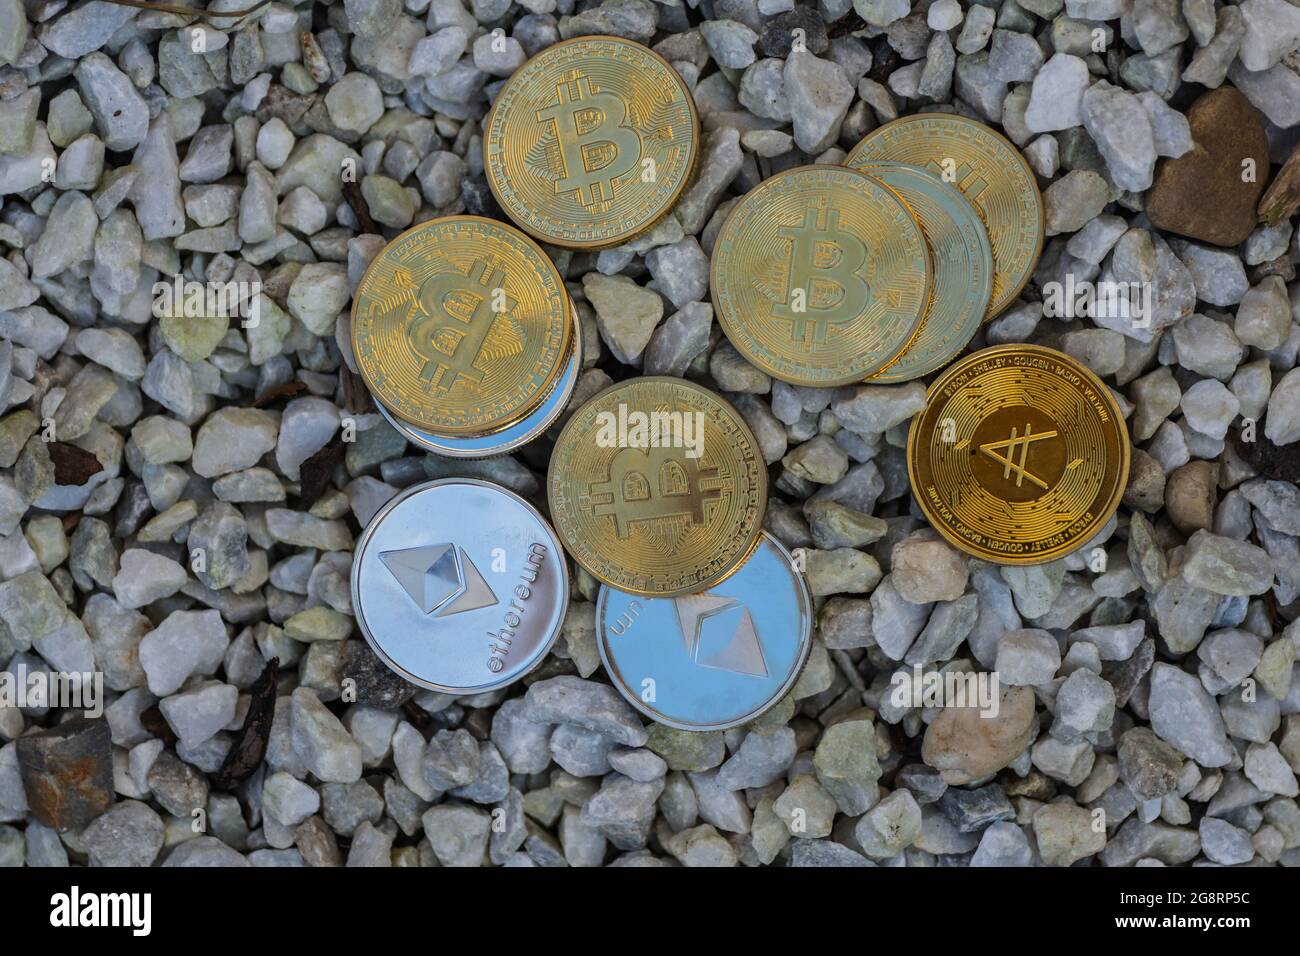 beaucoup de pièces d'or et d'argent valant l'éther bitcoin et ada de crypto-monnaie se trouvant sur une vue de gravier blanc d'en haut Banque D'Images